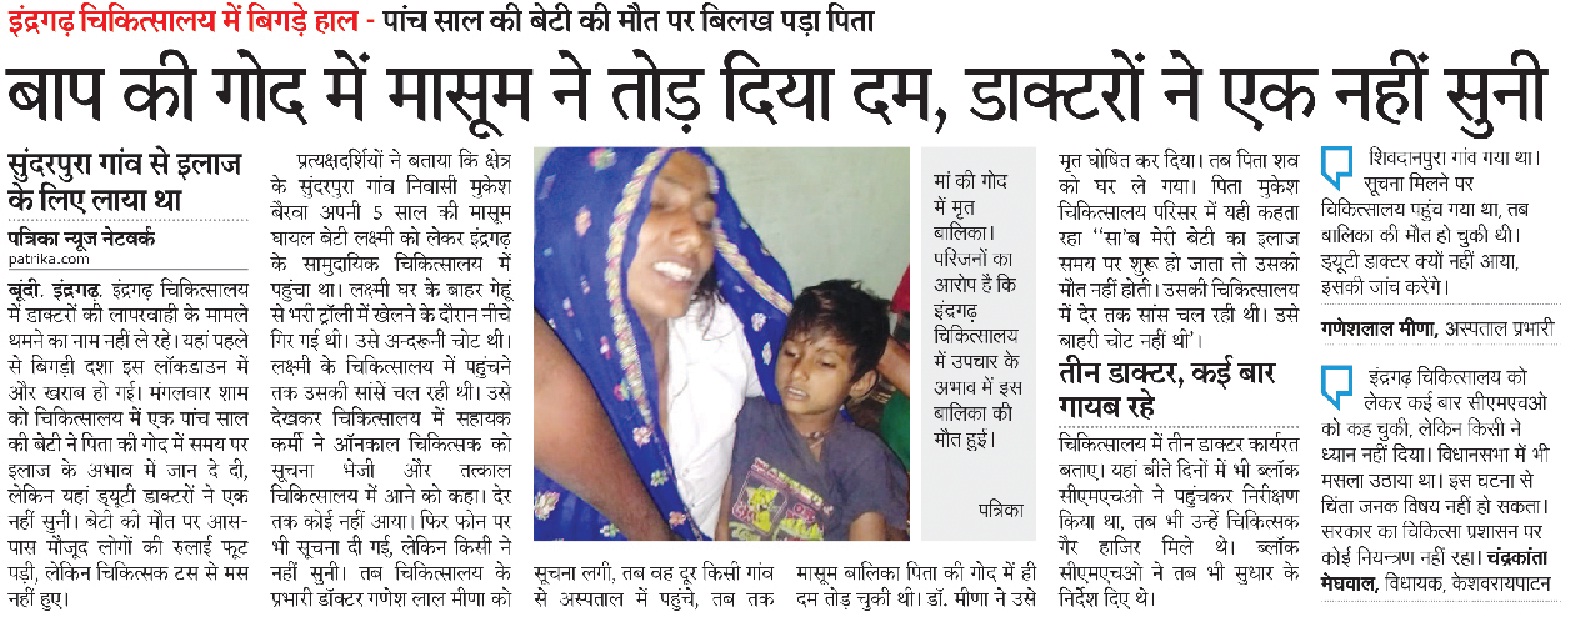 मासूम बालिका की मौत का मामला, इंद्रगढ़ चिकित्सालय के दो डाक्टरों को कारण बताओ नोटिस